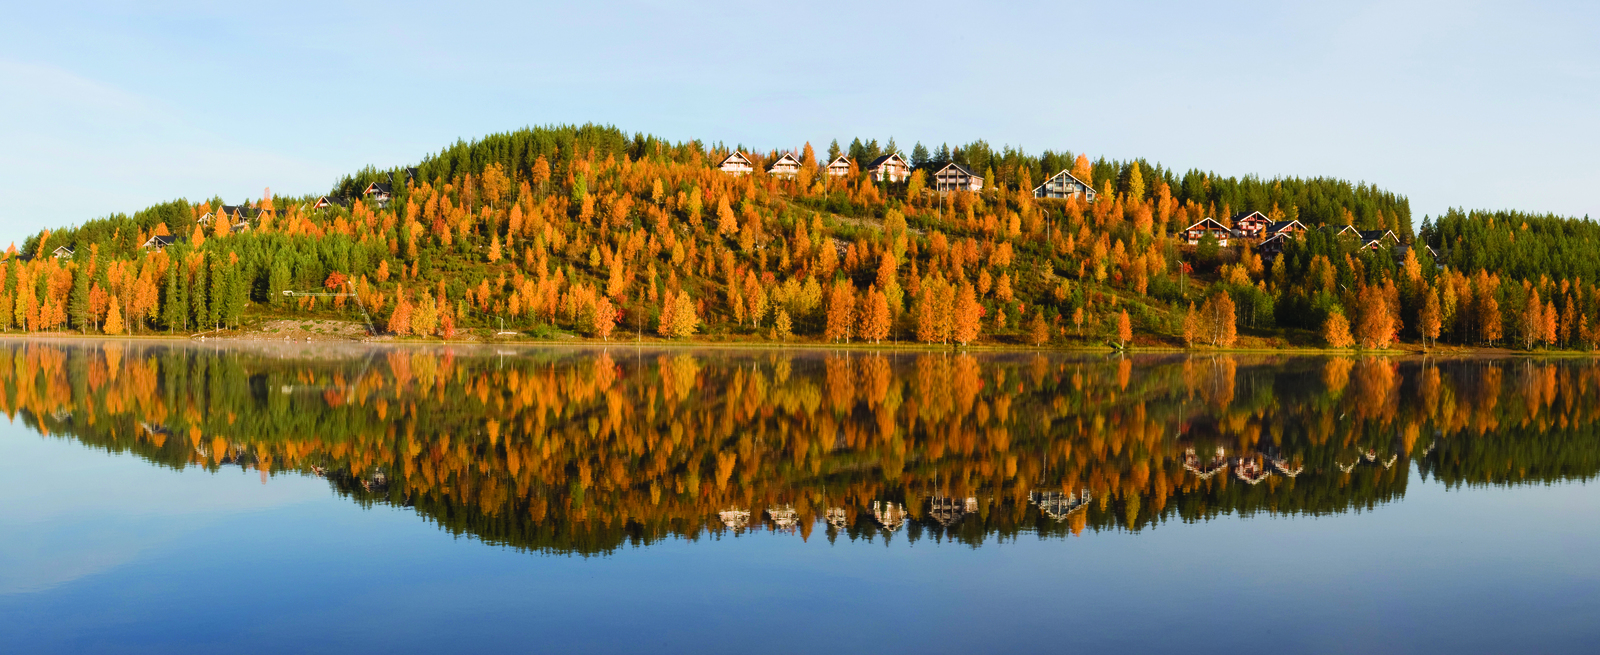 Tyyneen järven pintaan heijastuu ruskan väreissä hehkuva rinnemaisema. Rinteessä on mökkejä.